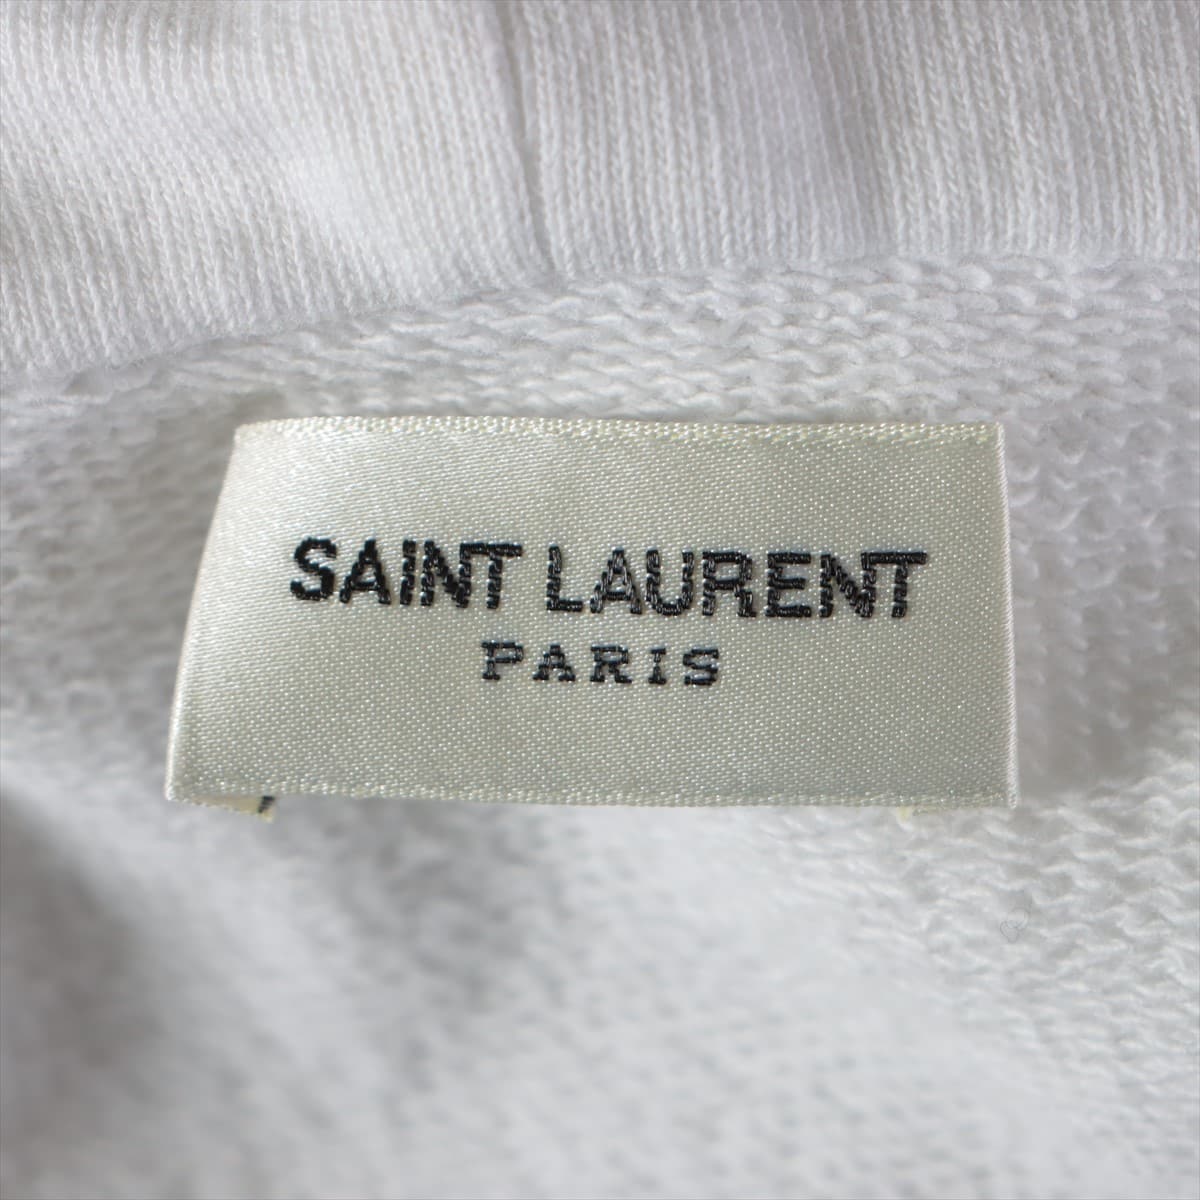 Saint Laurent Paris 18 years Cotton Parker M Men's White